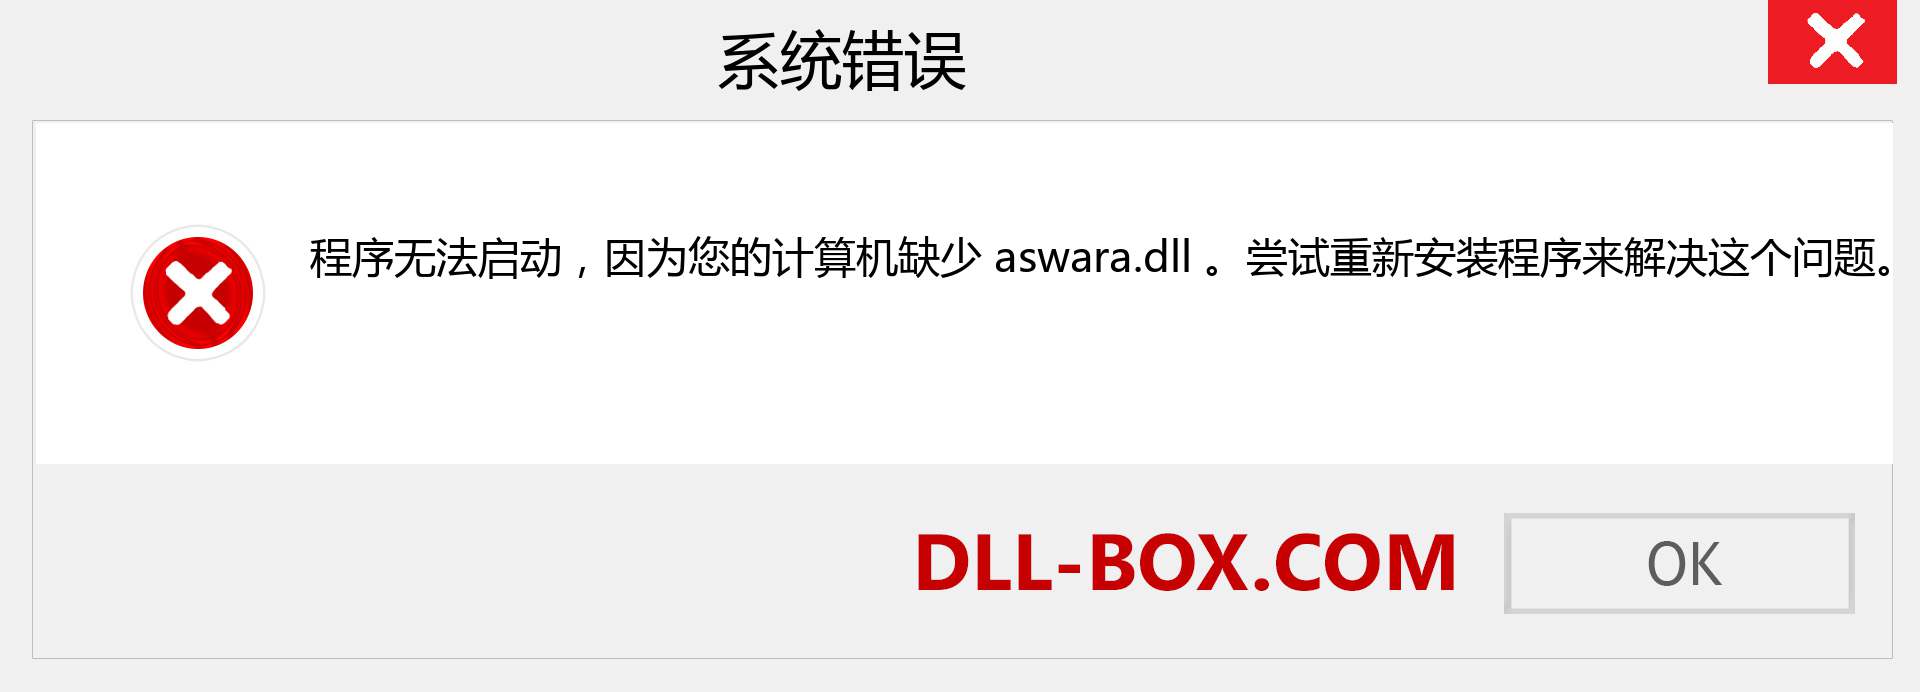 aswara.dll 文件丢失？。 适用于 Windows 7、8、10 的下载 - 修复 Windows、照片、图像上的 aswara dll 丢失错误